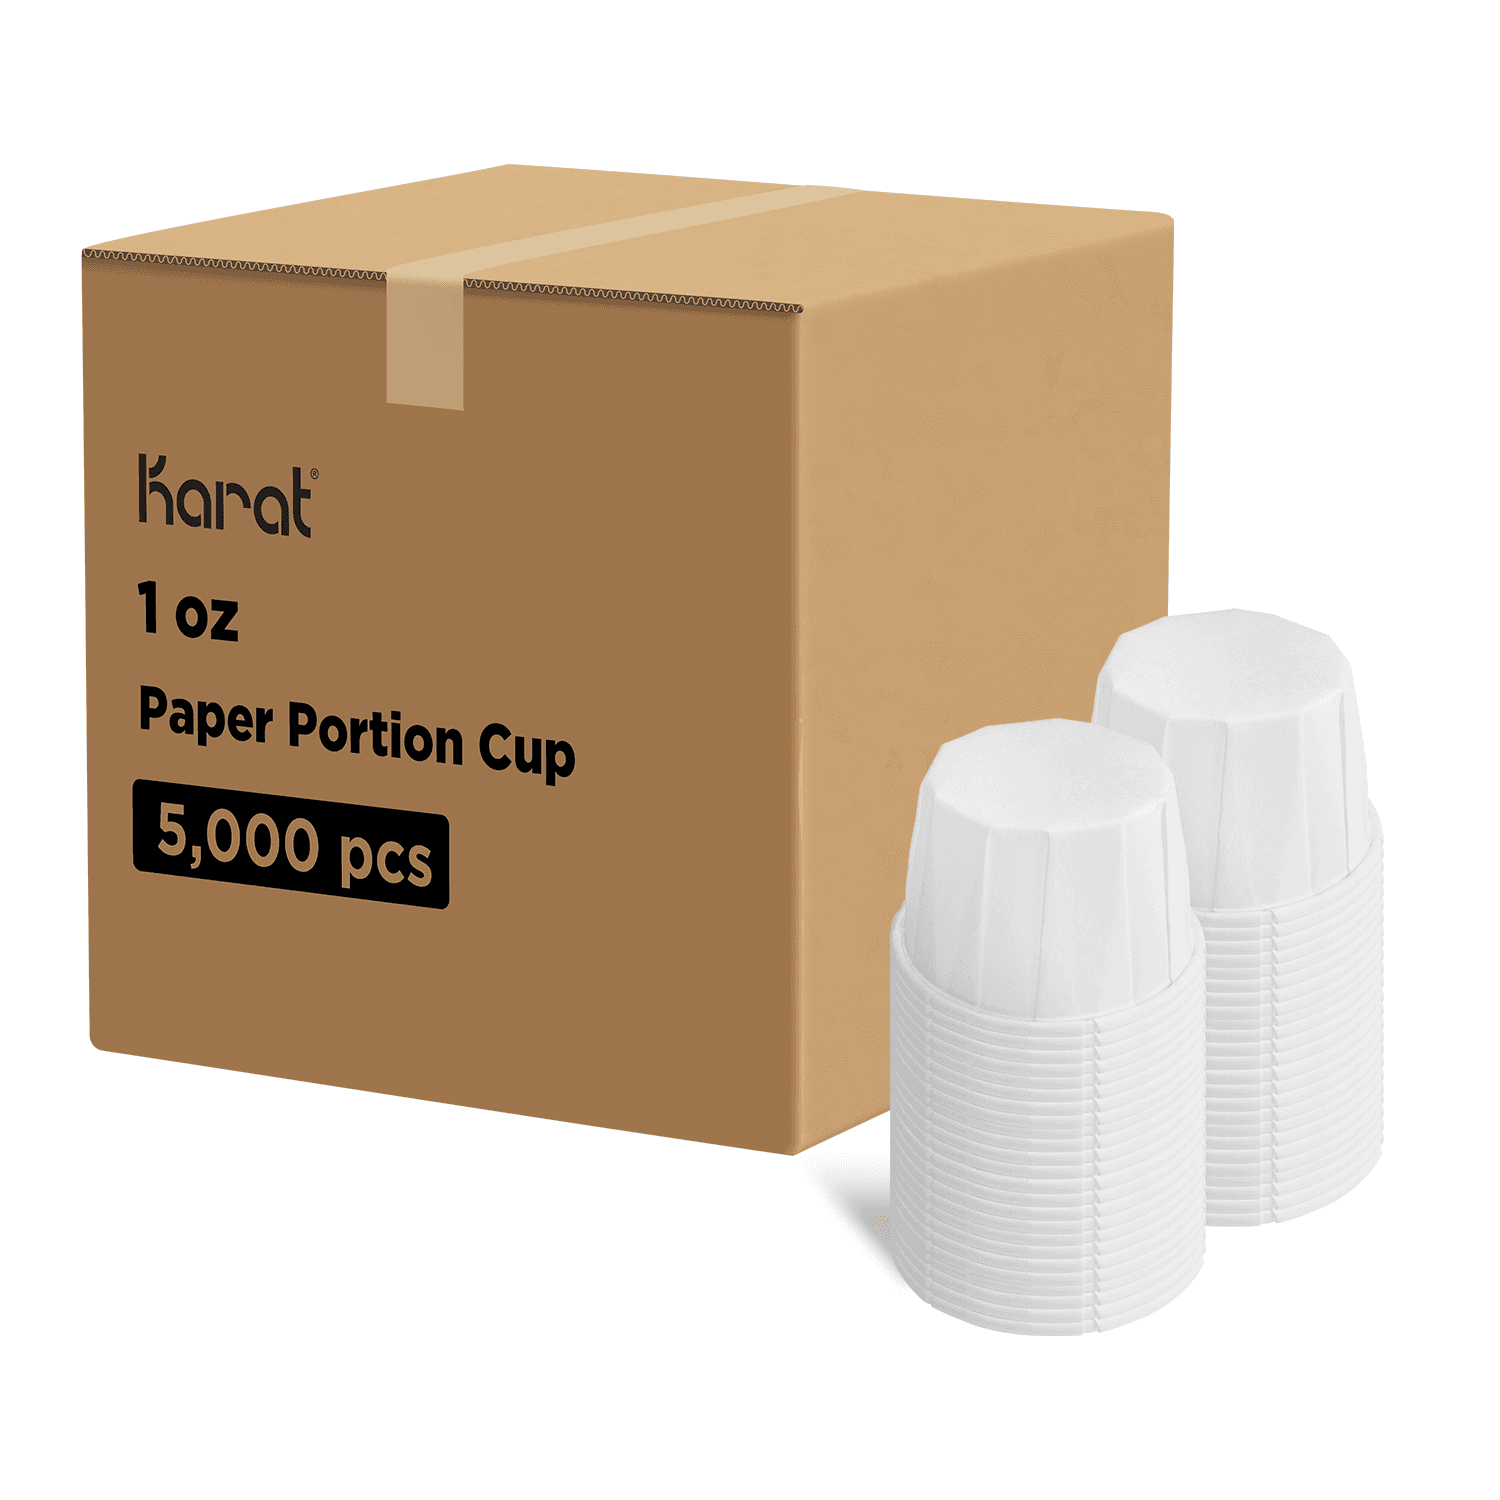 Karat 1 oz Paper Portion Cups - 5,000 pcs